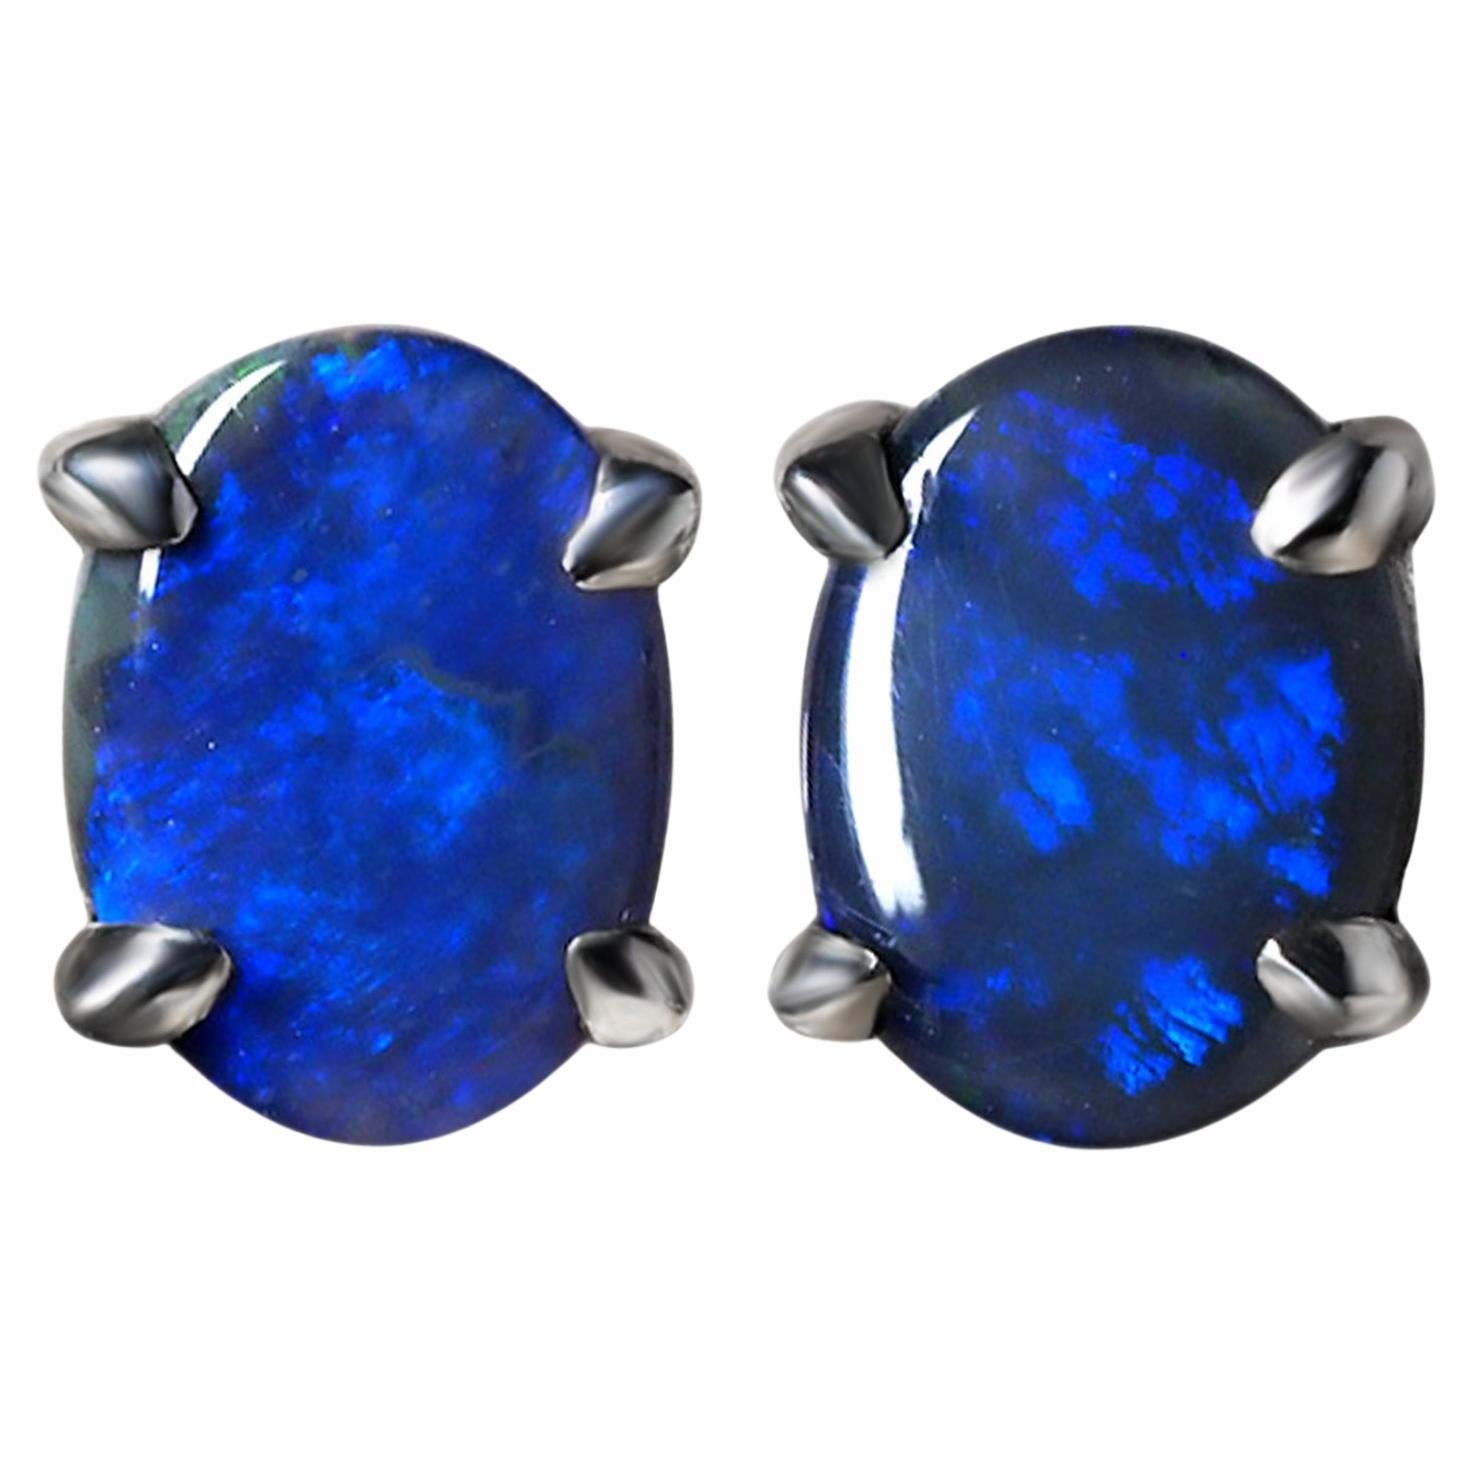 Blue Opal Silver Earrings Natural Australian opal Gemstone 2.6 carat wife gift